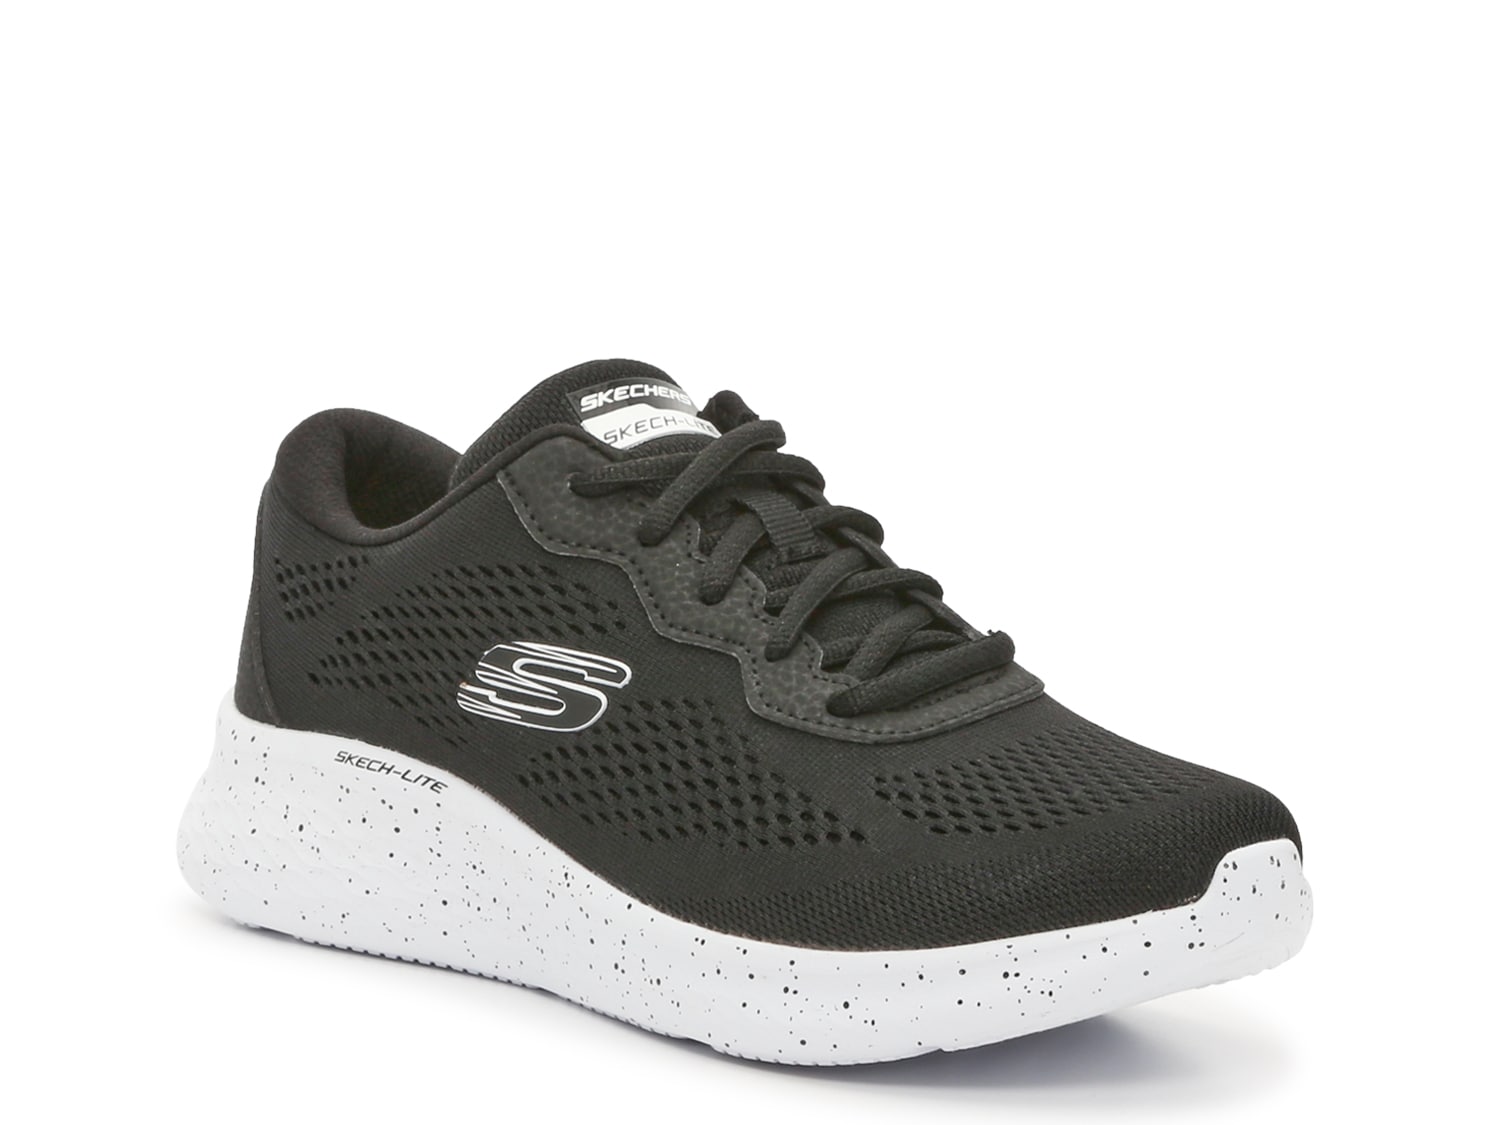 Skechers Skech Lite Pro Sneaker - Women's Shipping |